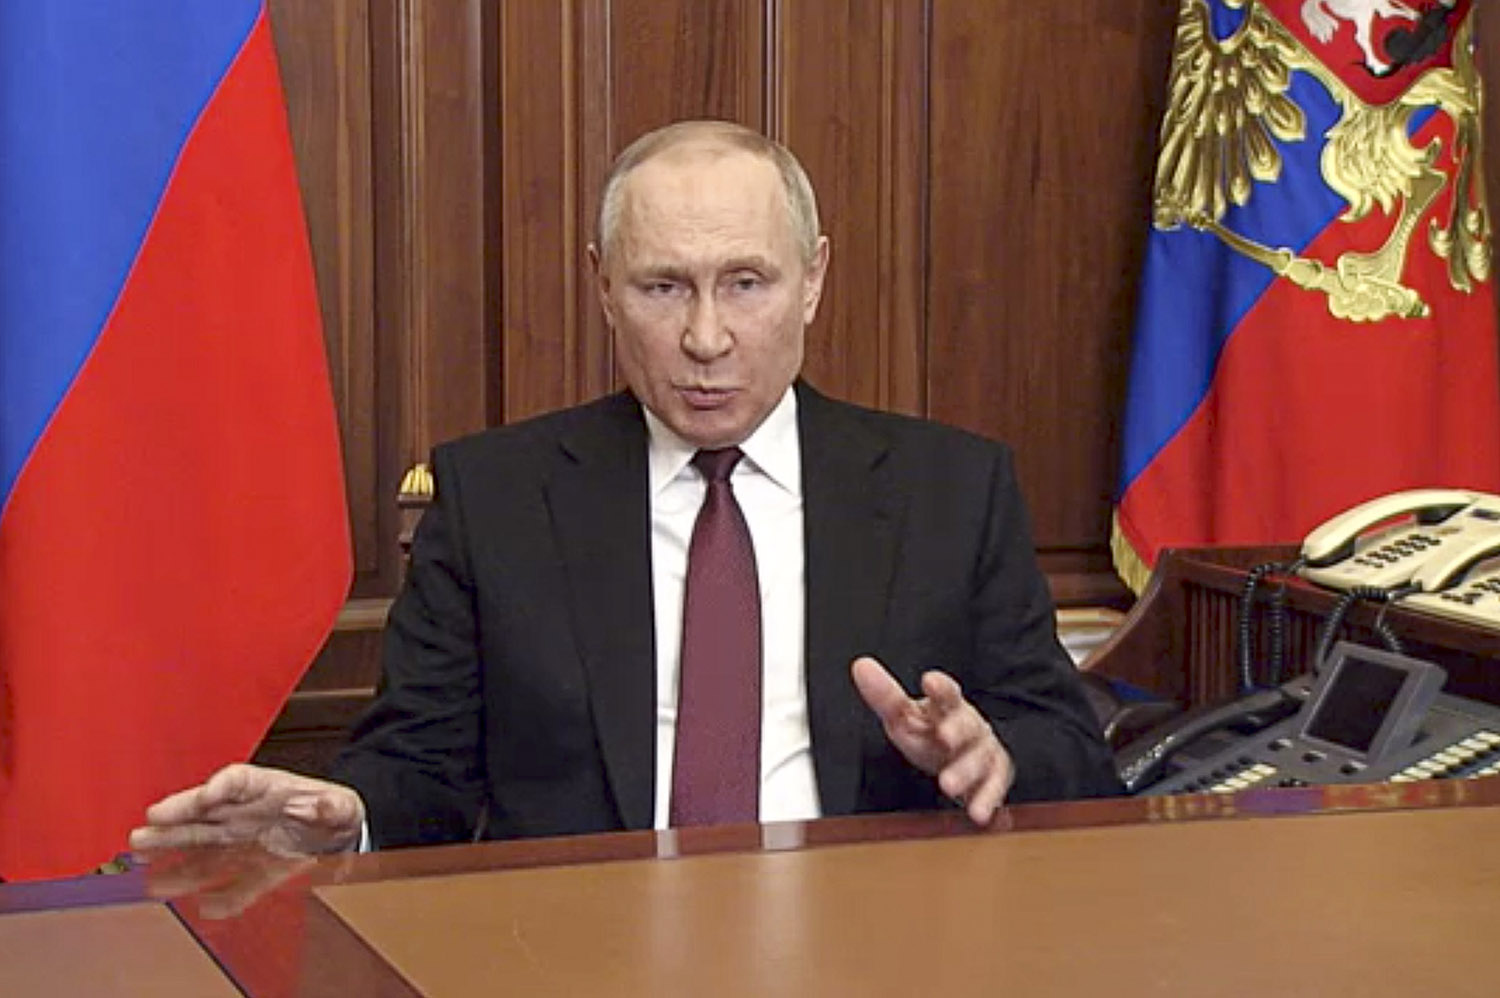 פוטין מכריז על פלישה לאוקראינה (צילום: Russian Presidential Press Service via AP)